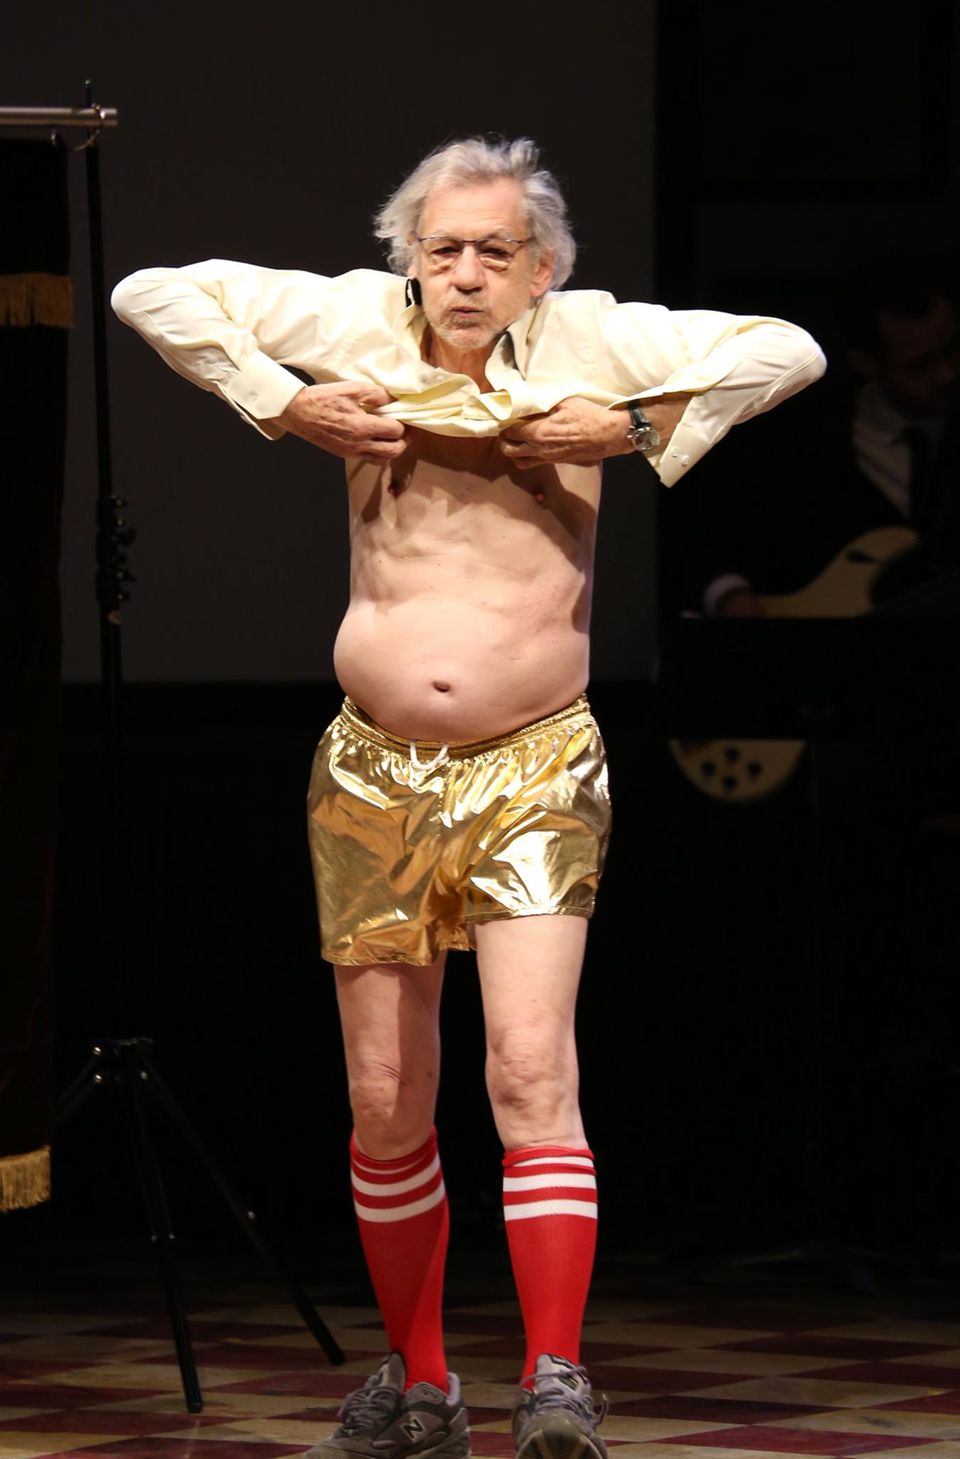 Ian McKellen steht bei der "14th Annual Only Make Believe Gala" im Bernard B. Jacobs Theater in New York City strippend auf der Bühne.